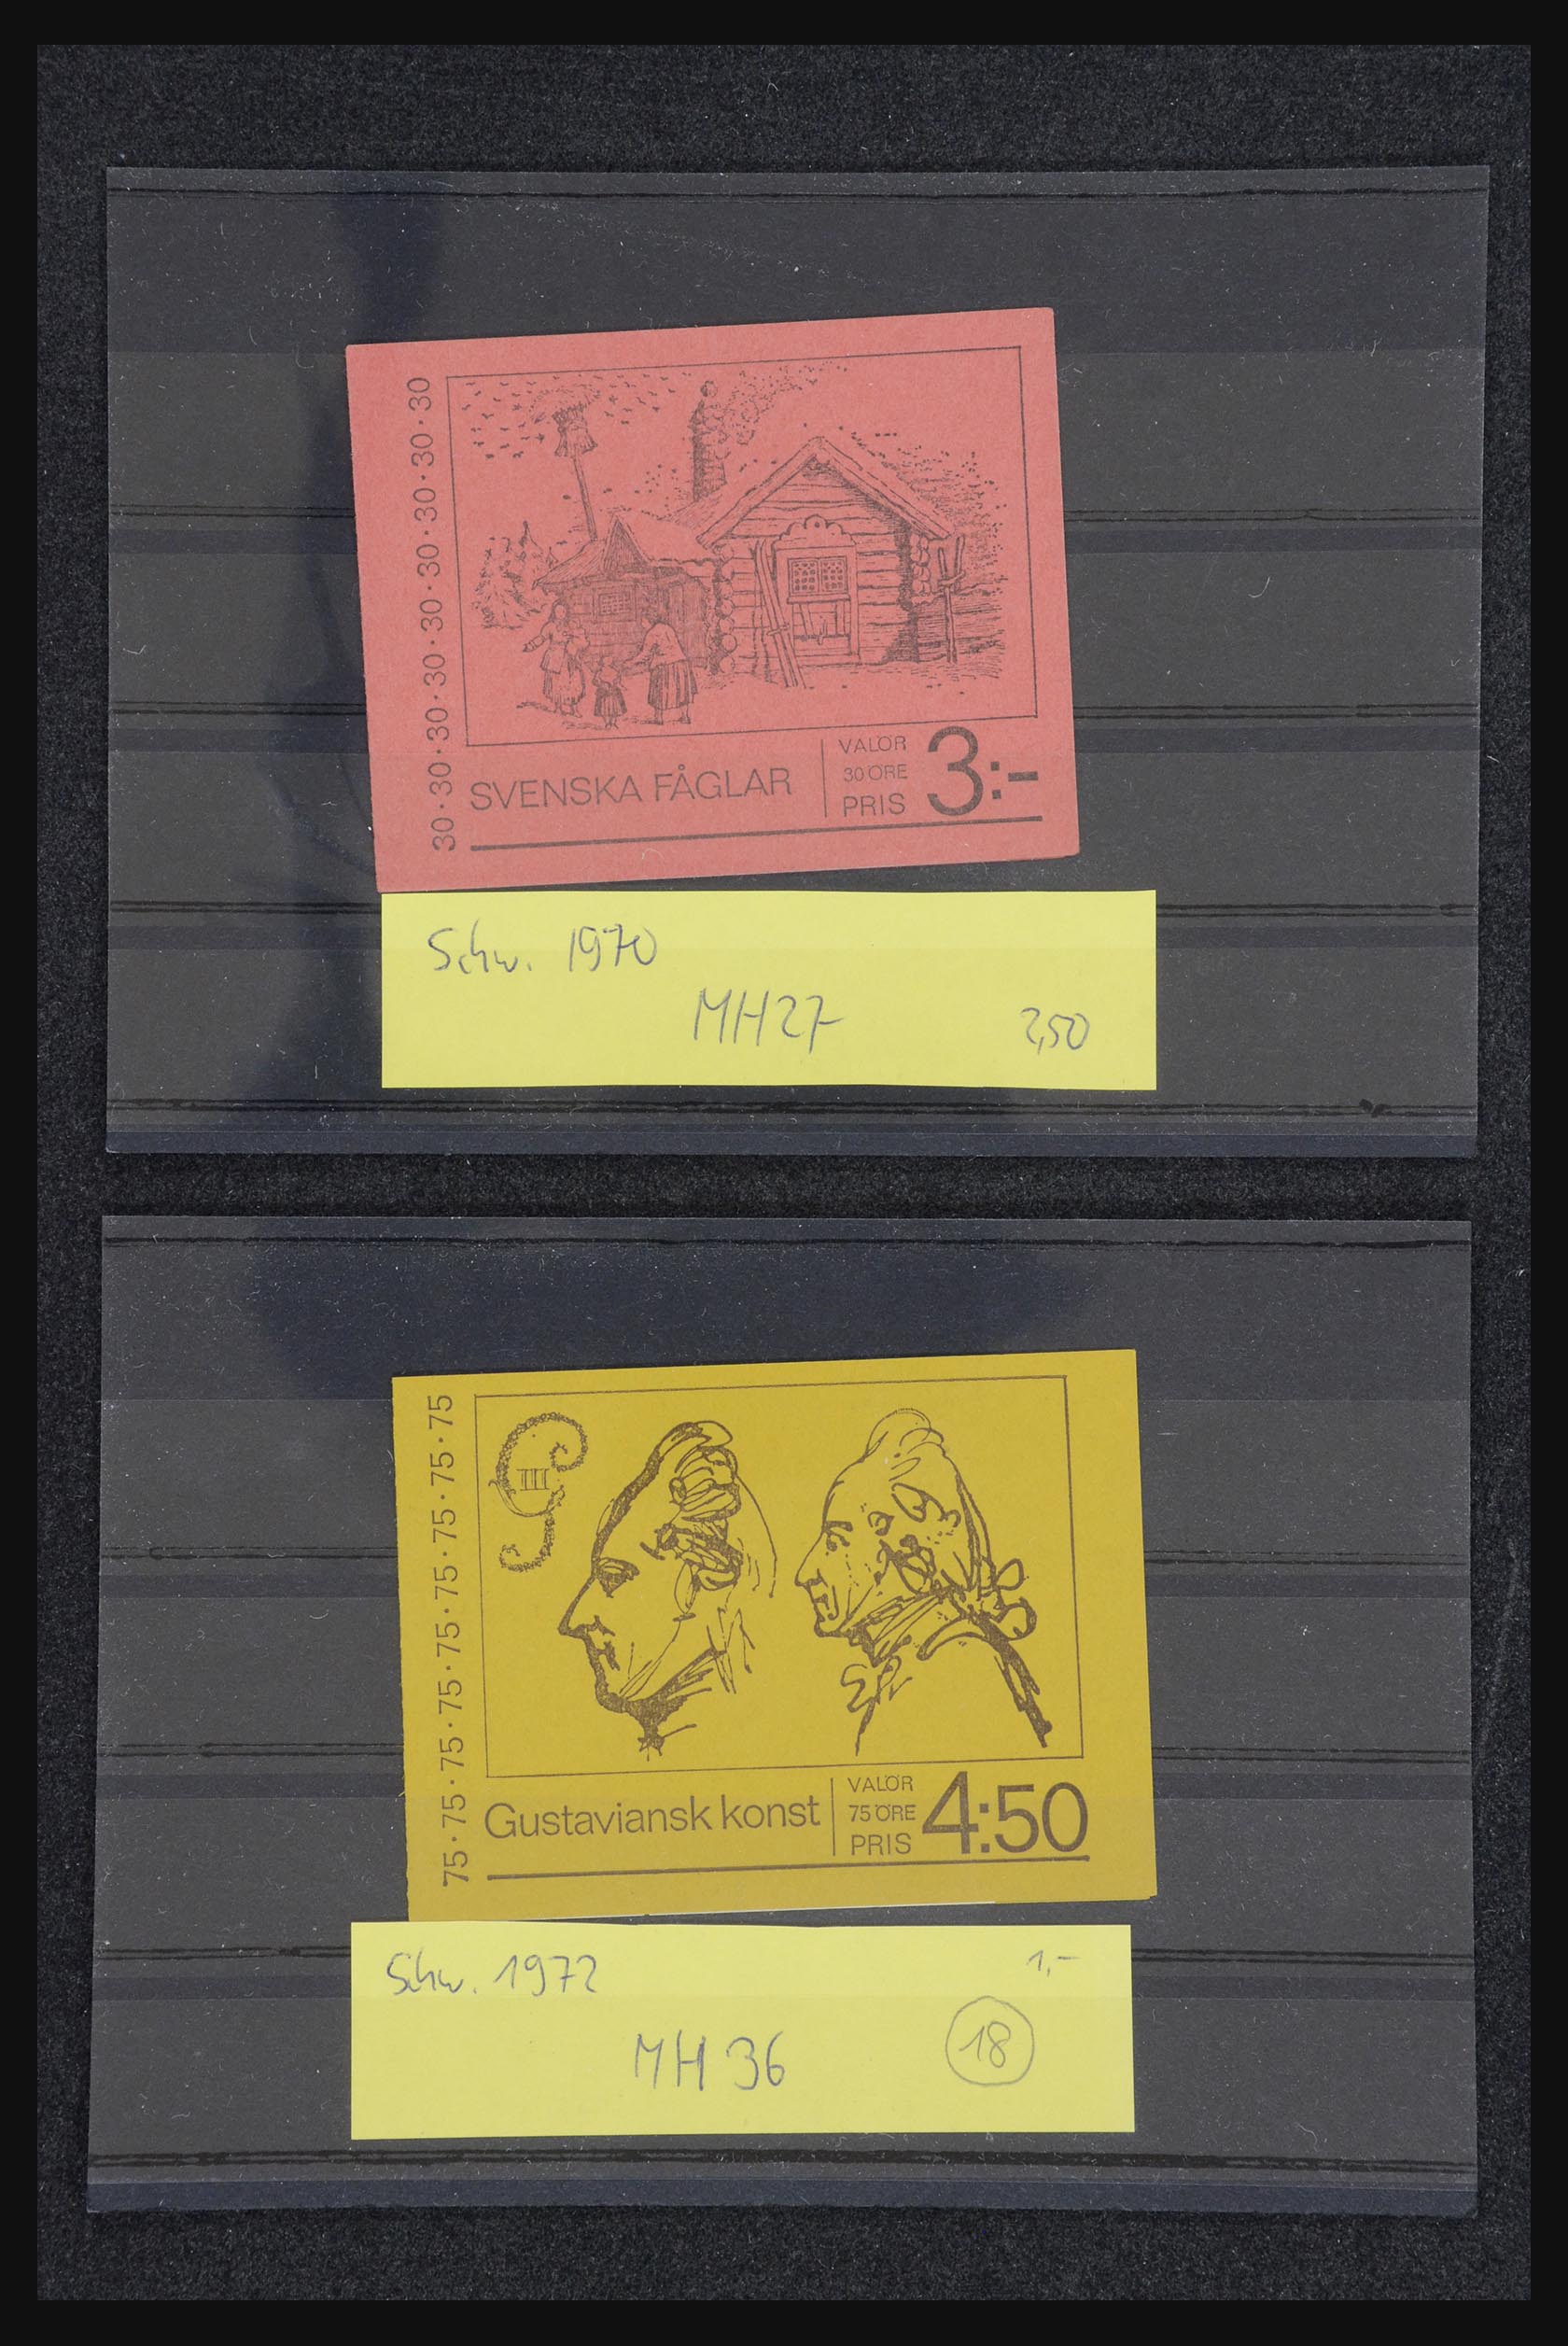 32026 039 - 32026 Sweden stampbooklets 1949-1990.